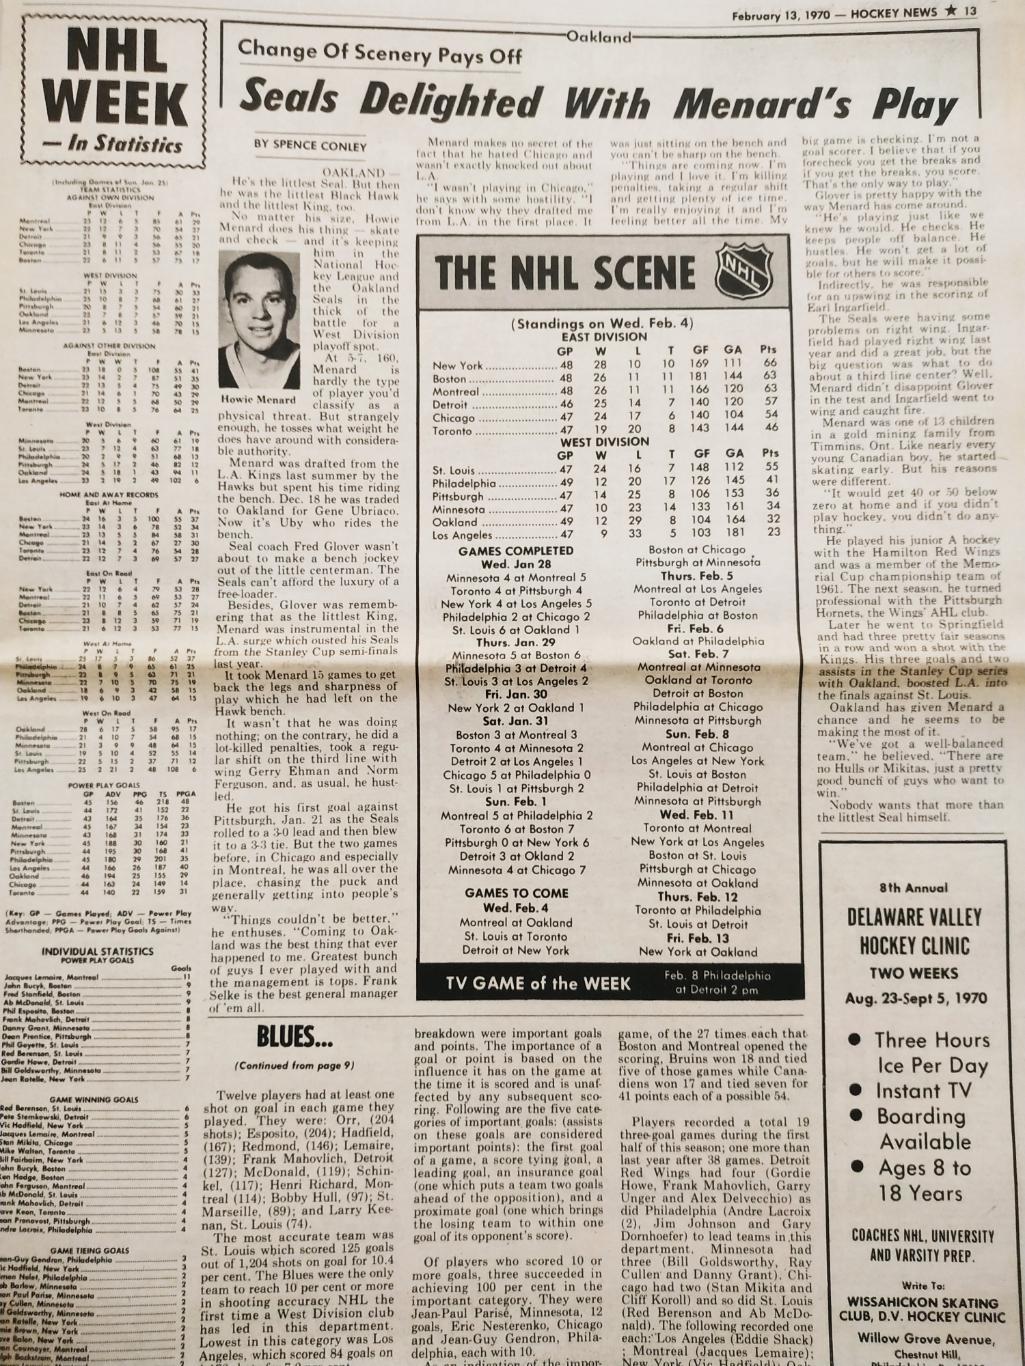 ХОККЕЙ ЖУРНАЛ ЕЖЕНЕДЕЛЬНИК НХЛ НОВОСТИ ХОККЕЯ FEB.13 1970 NHL THE HOCKEY NEWS 5